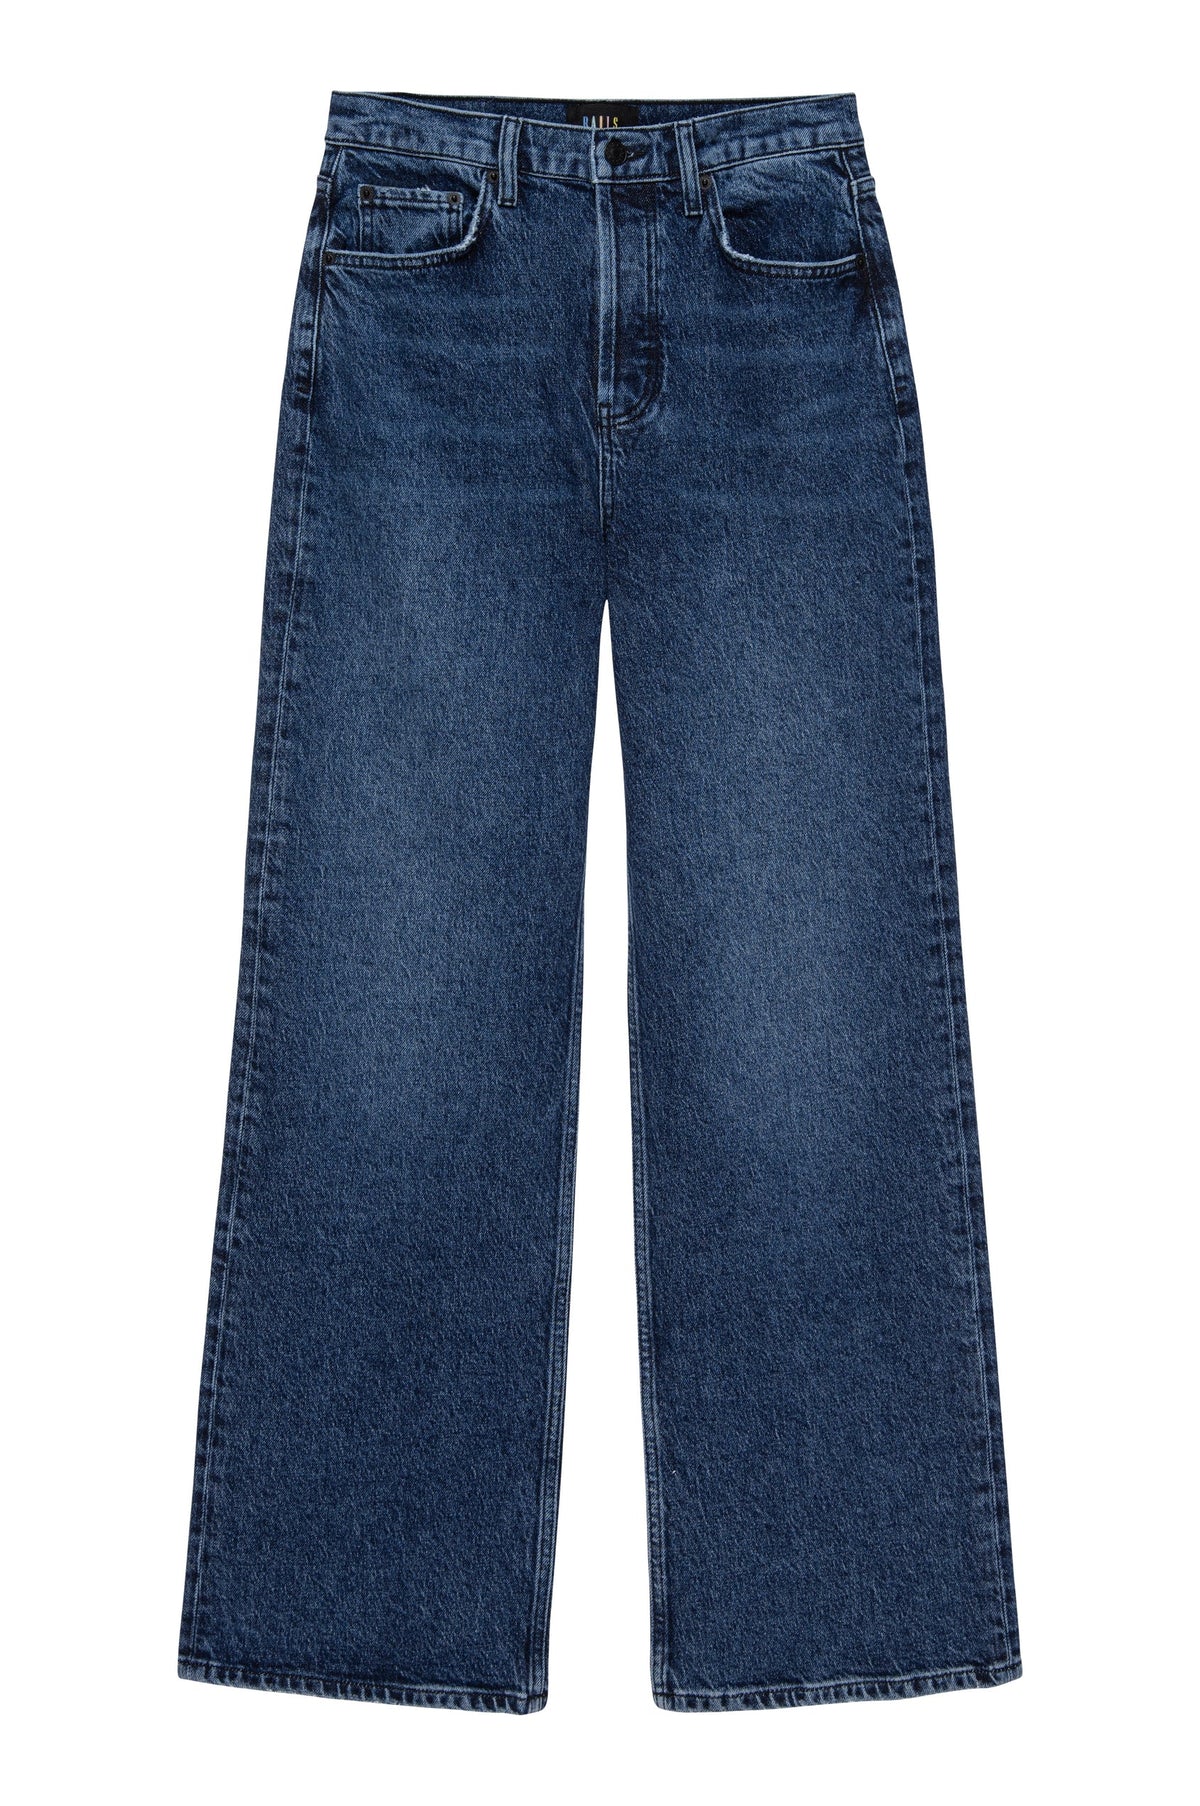 Wide leg blue jeans with a high waist